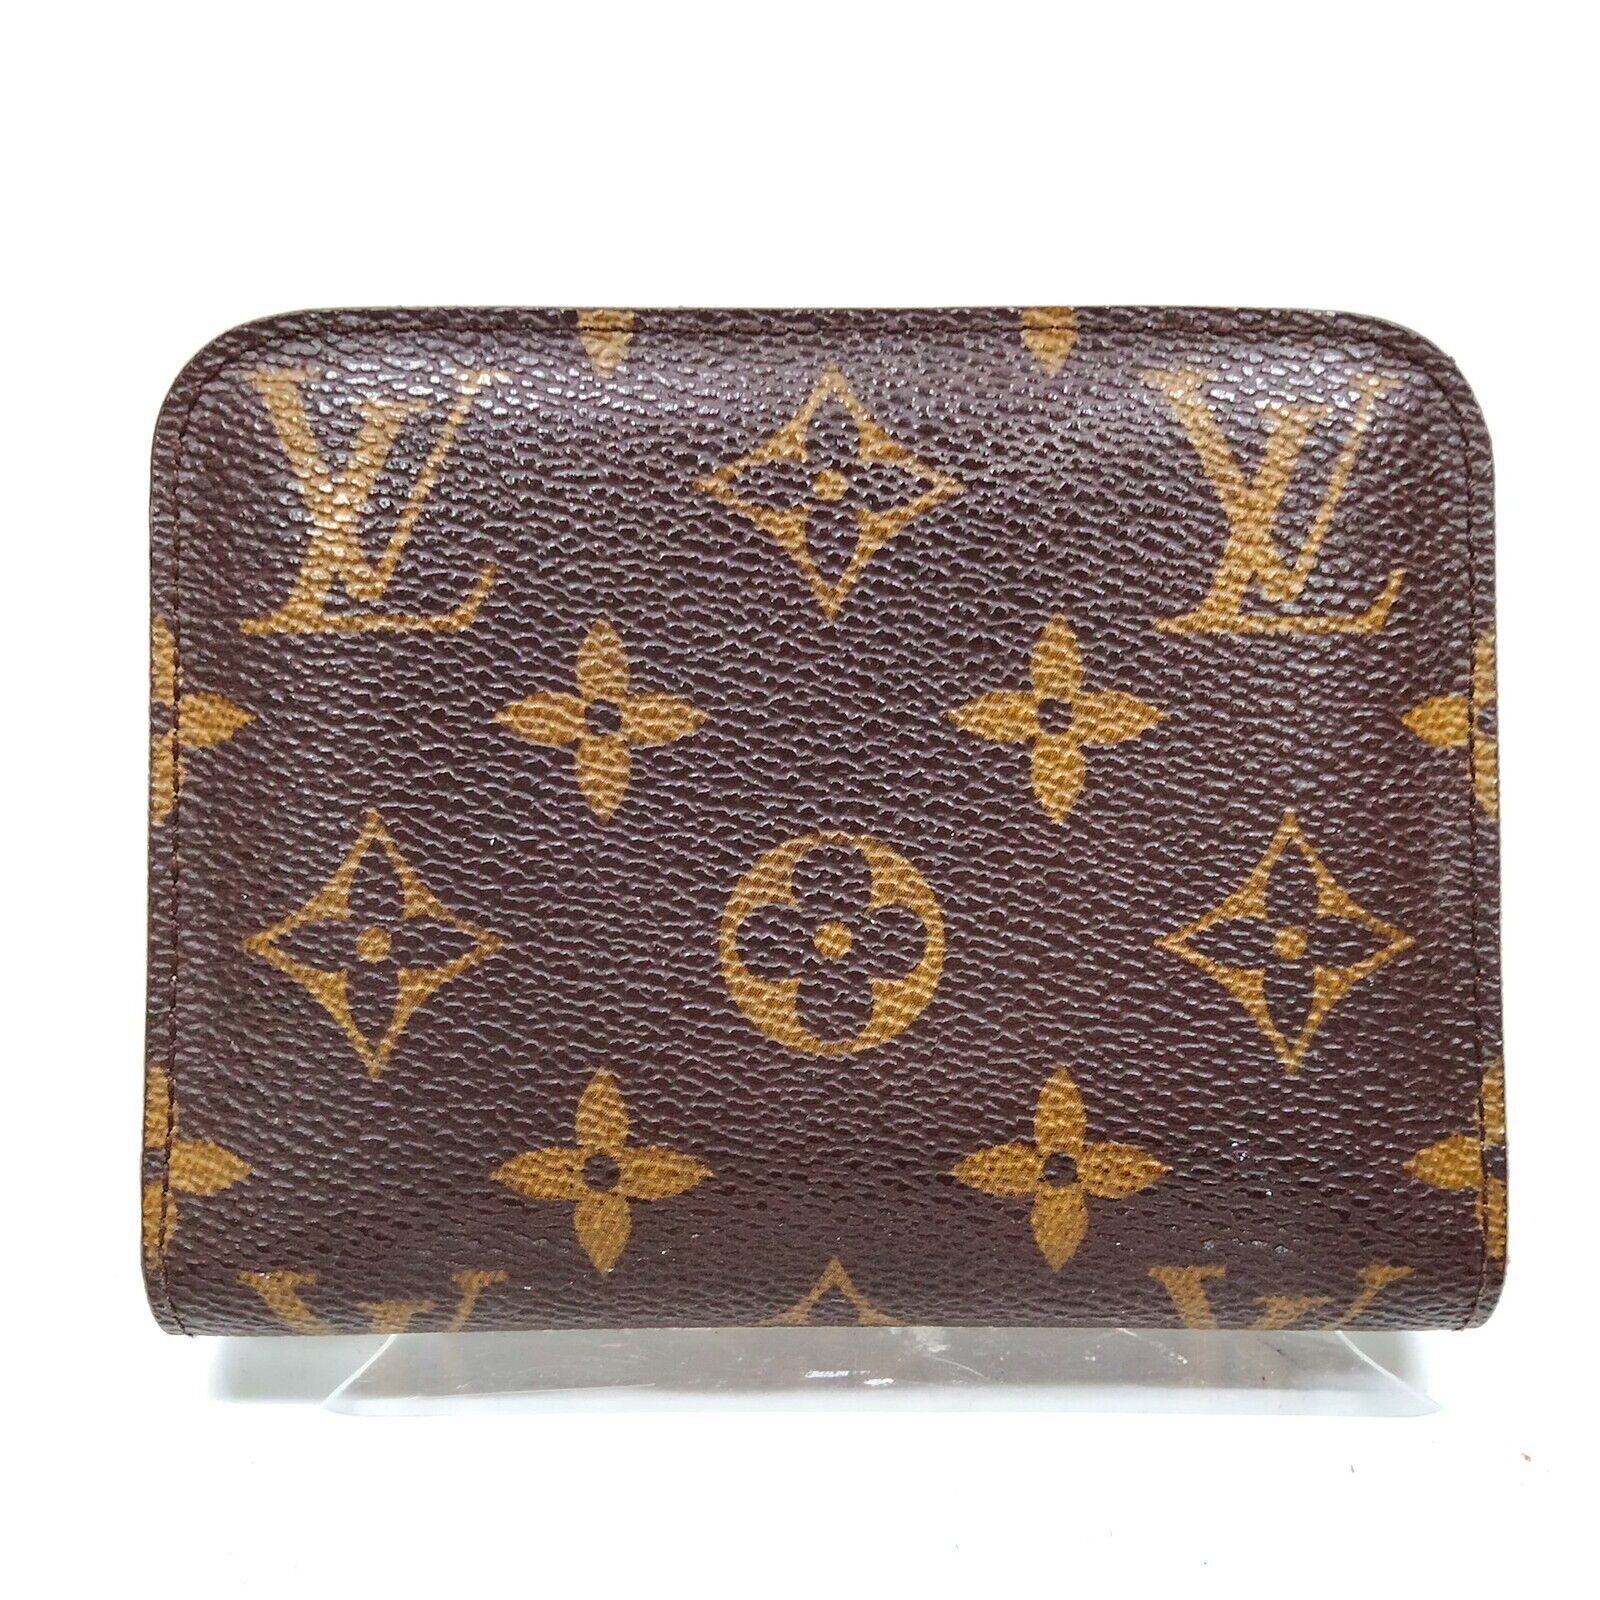 Louis Vuitton, Bags, Sold Louis Vuitton Insolite Wallet Charm